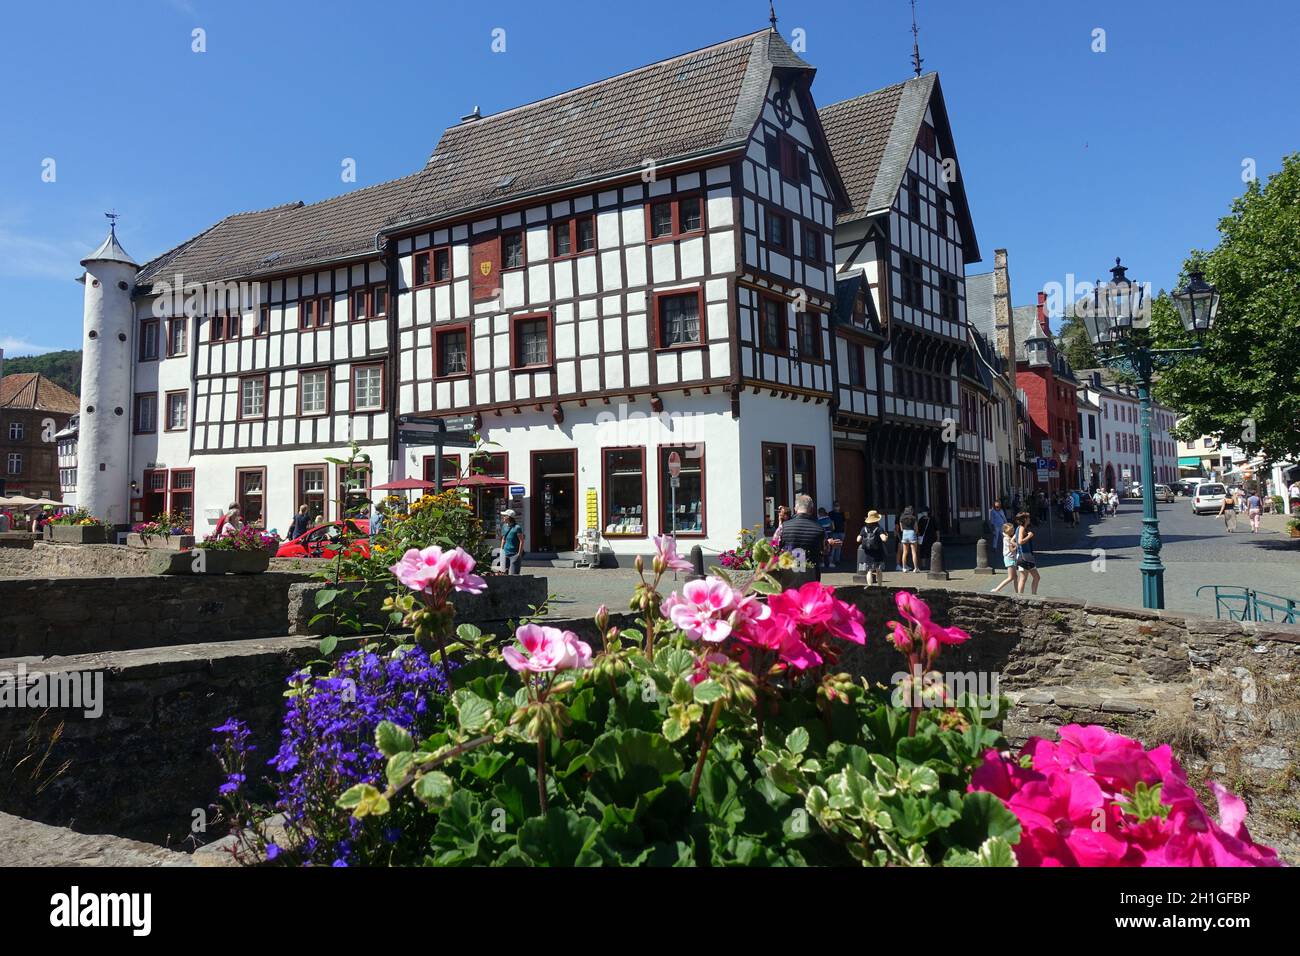 denkmalgeschützte Häuser an der Erft in der historischen Altstadt, Bad Münstereifel, Nordrhein-Westfalen, Deutschland Stock Photo